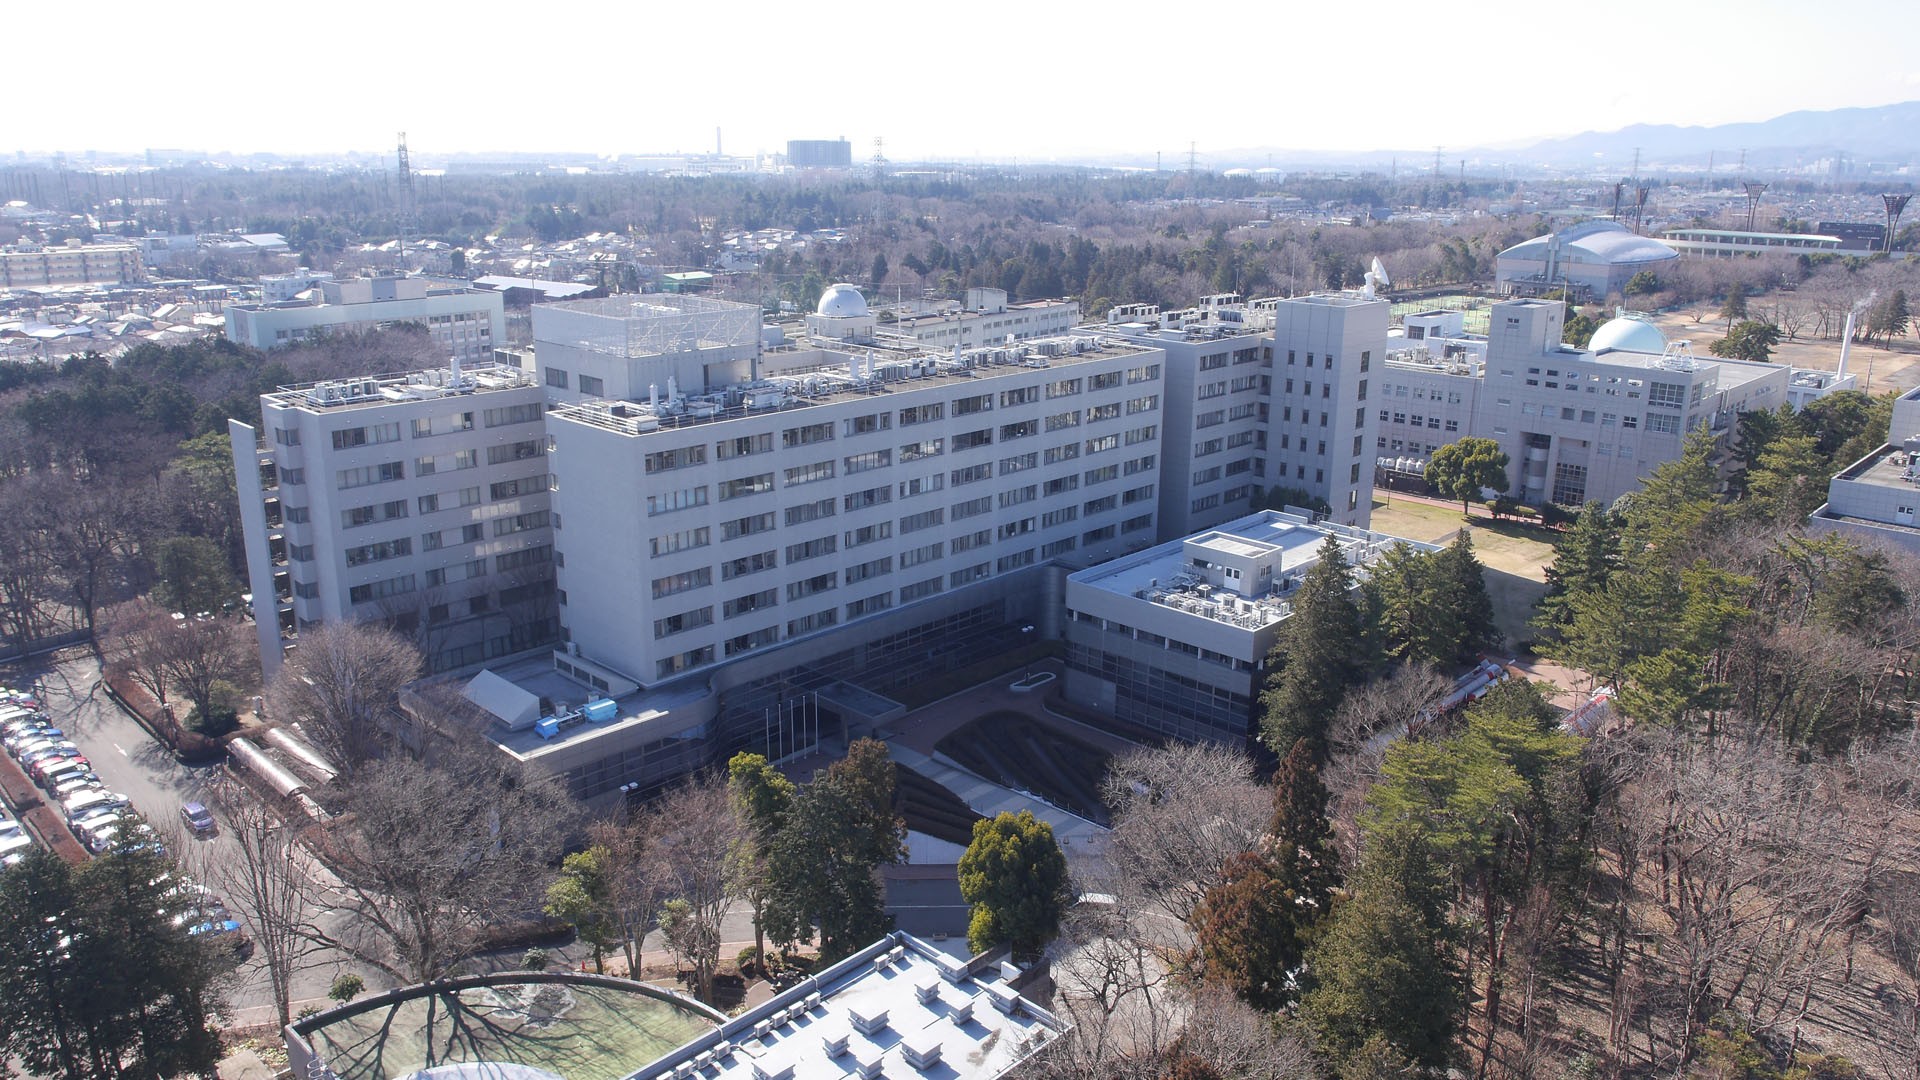 Le campus JAXA Sagamihara